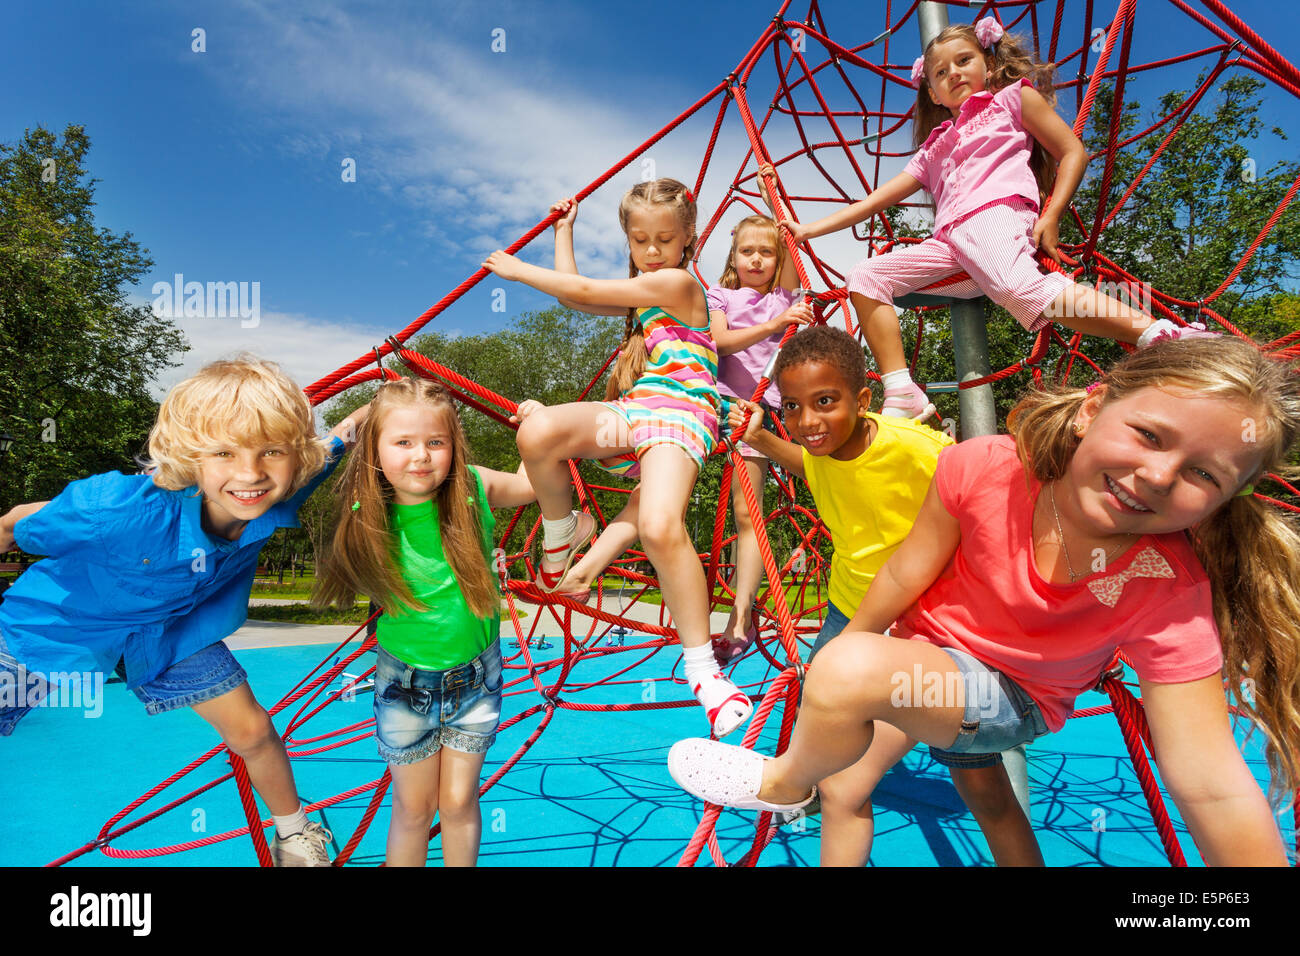 Glückliche Gruppe von Kindern auf rote Seile zusammen im park Stockfoto